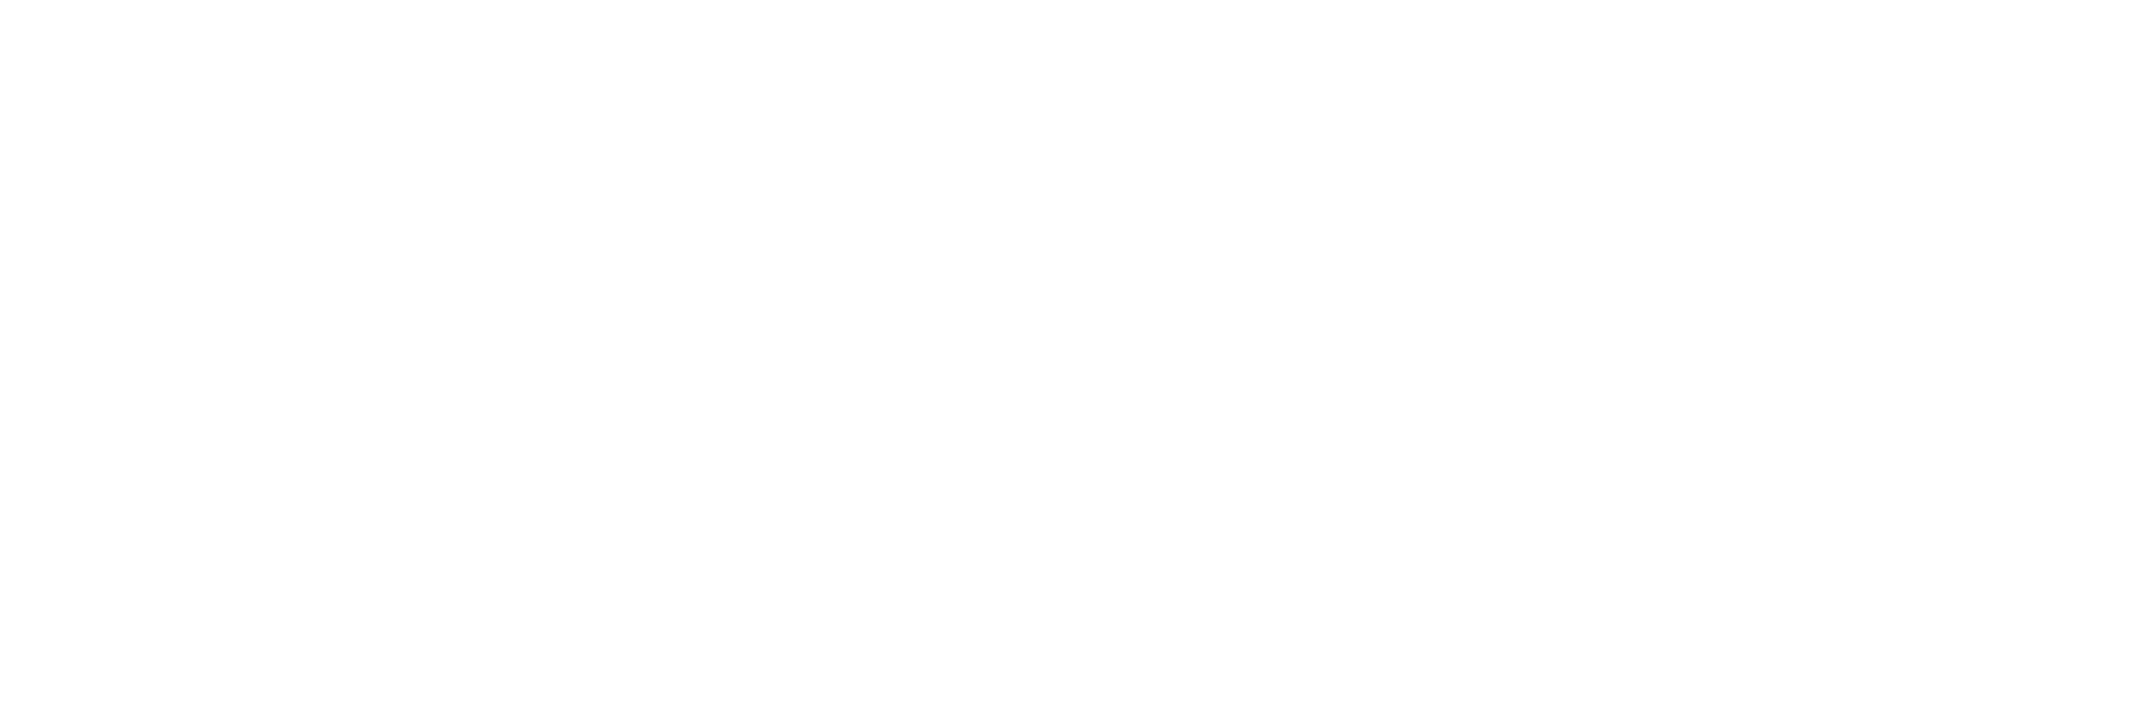 HF4